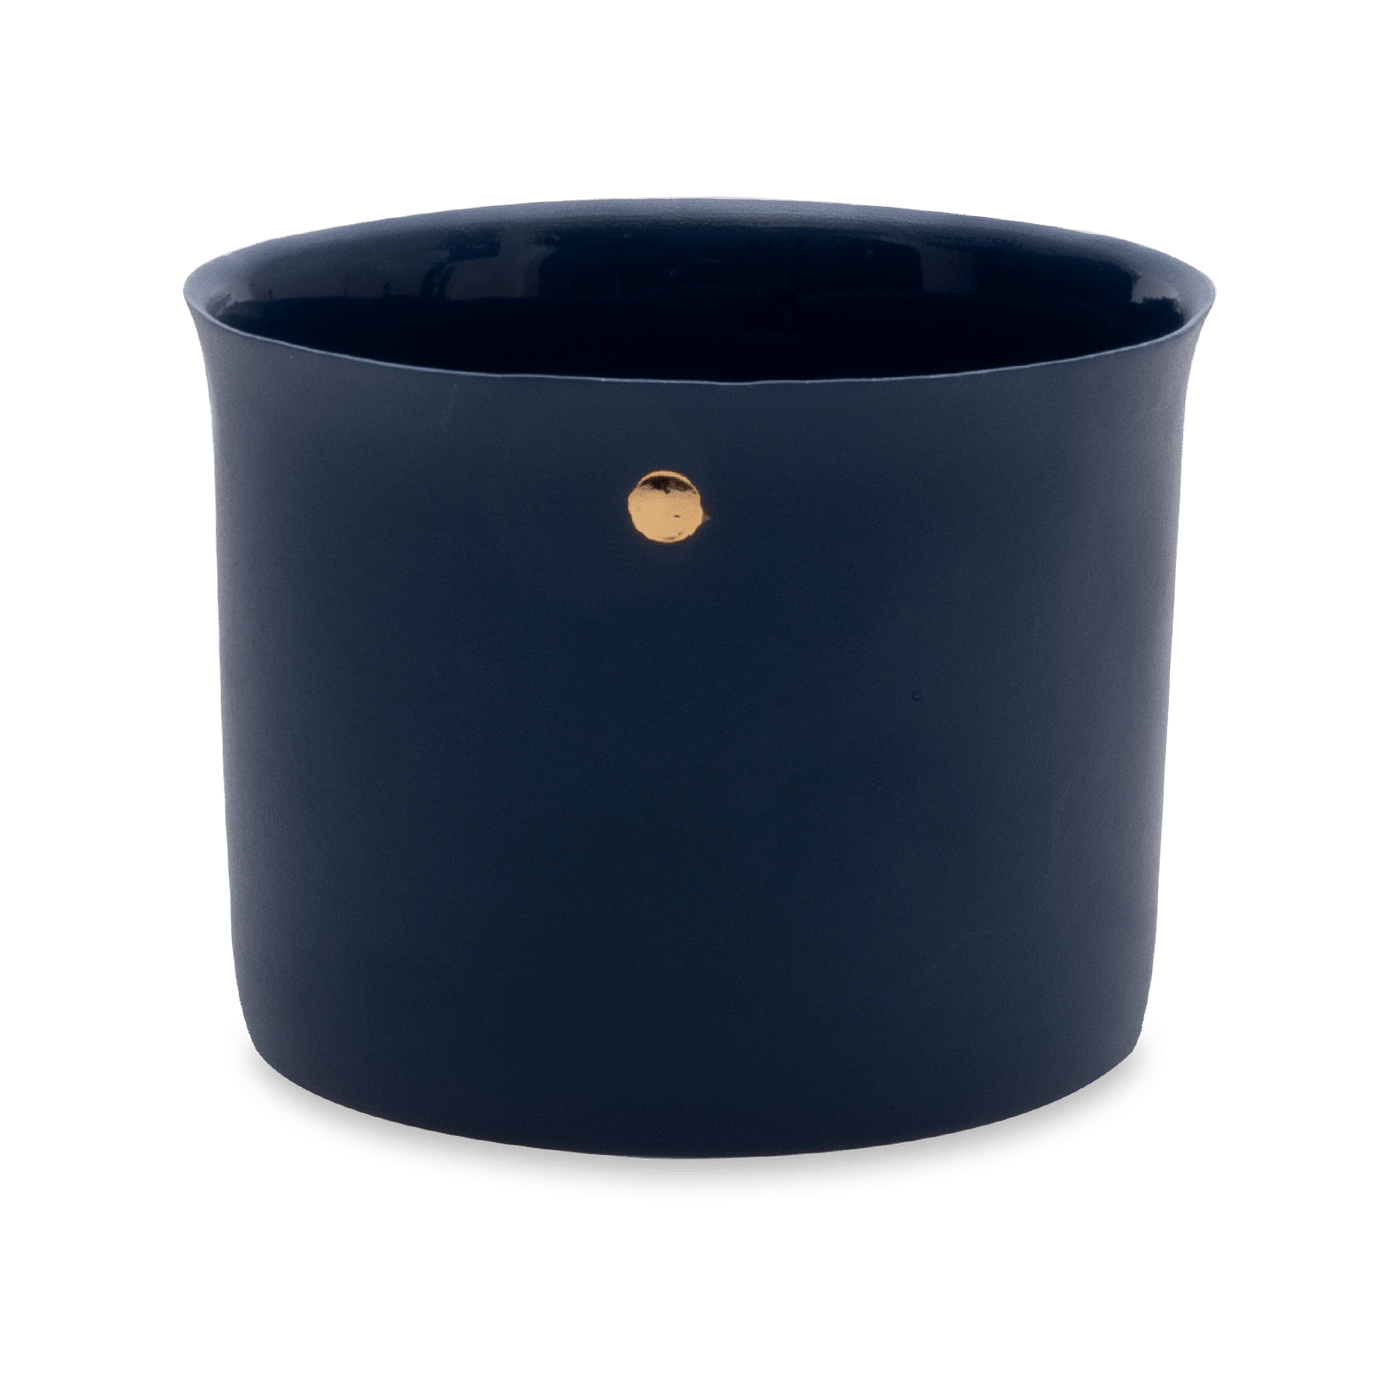 Handmade Nocturnal Big Mug, Navy - Gold, 330 ml Cups & Mugs sazy.com